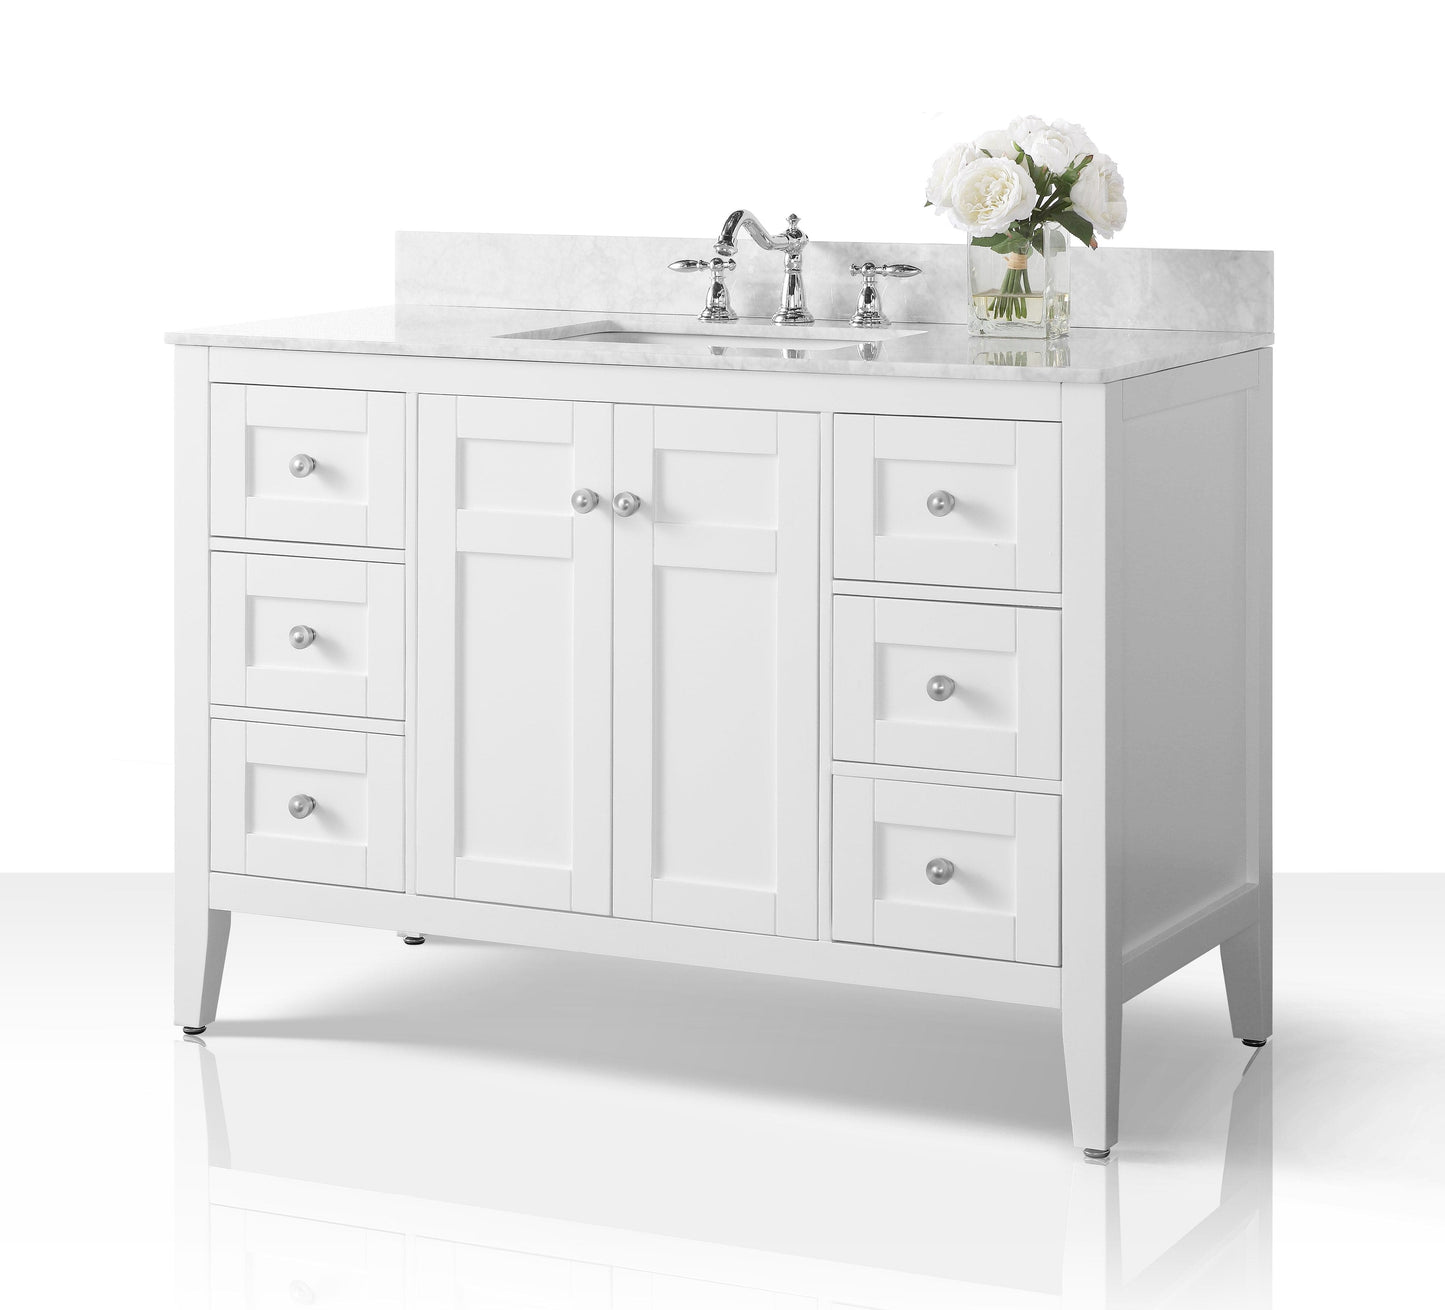 Ancerra Designs Maili 48 in. Bath Vanity Set in White